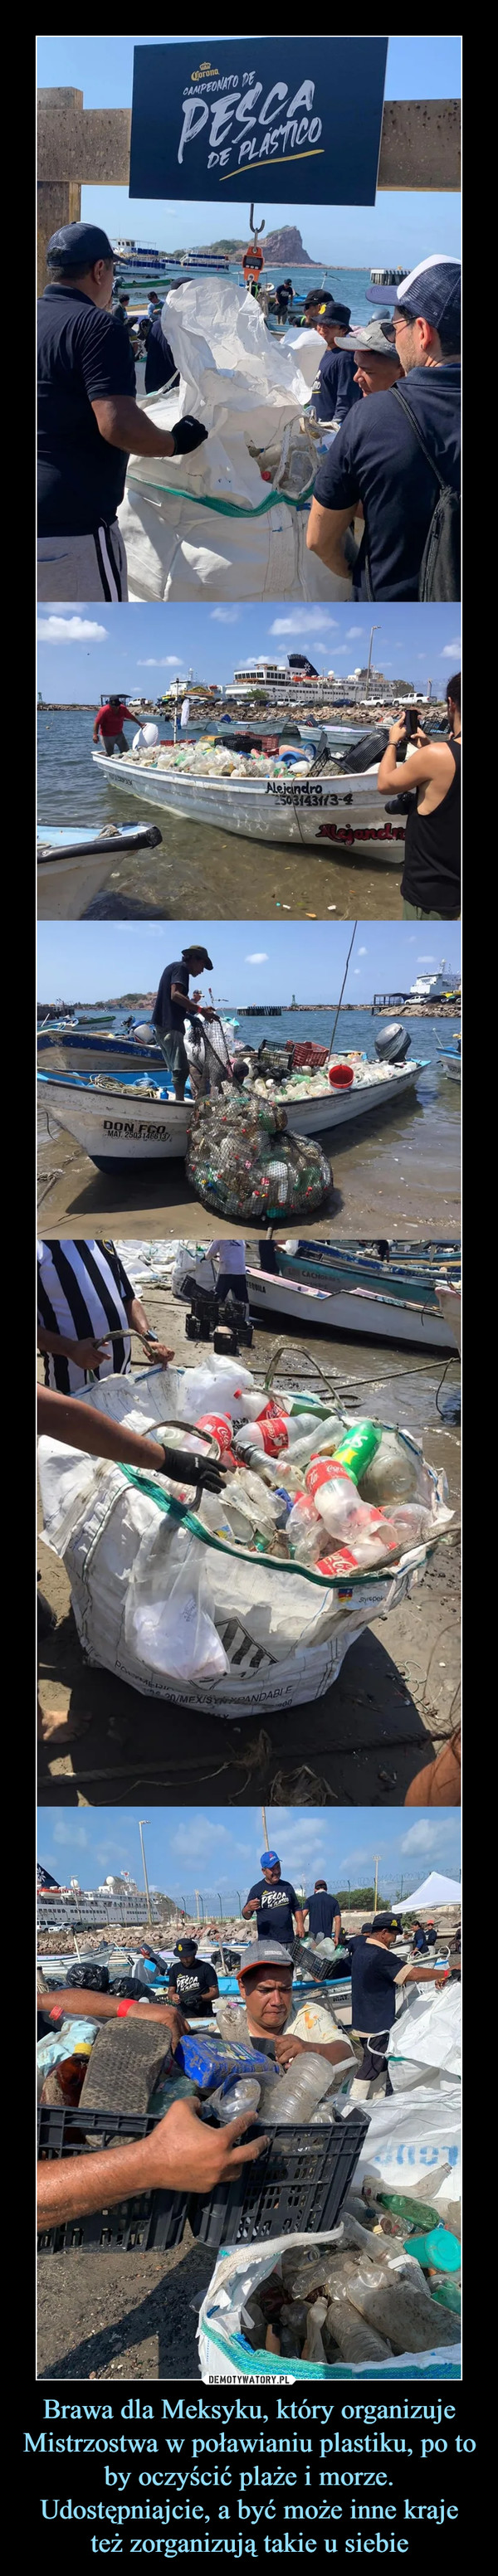 Brawa dla Meksyku, który organizuje Mistrzostwa w poławianiu plastiku, po to by oczyścić plaże i morze. Udostępniajcie, a być może inne kraje też zorganizują takie u siebie –  